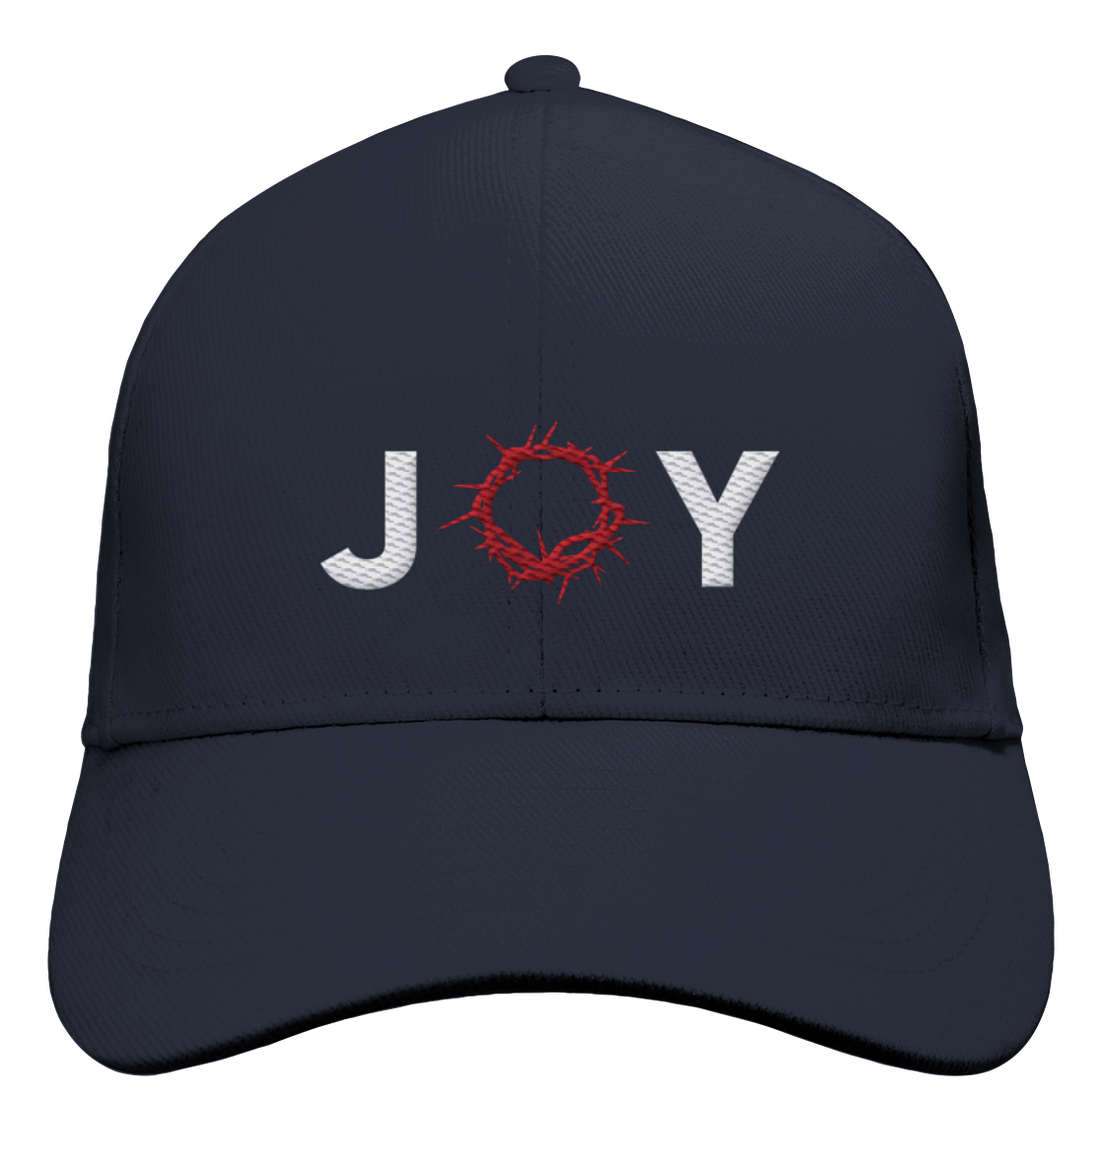 Ps 16,11 - JOY -Stick - Baseball Cap